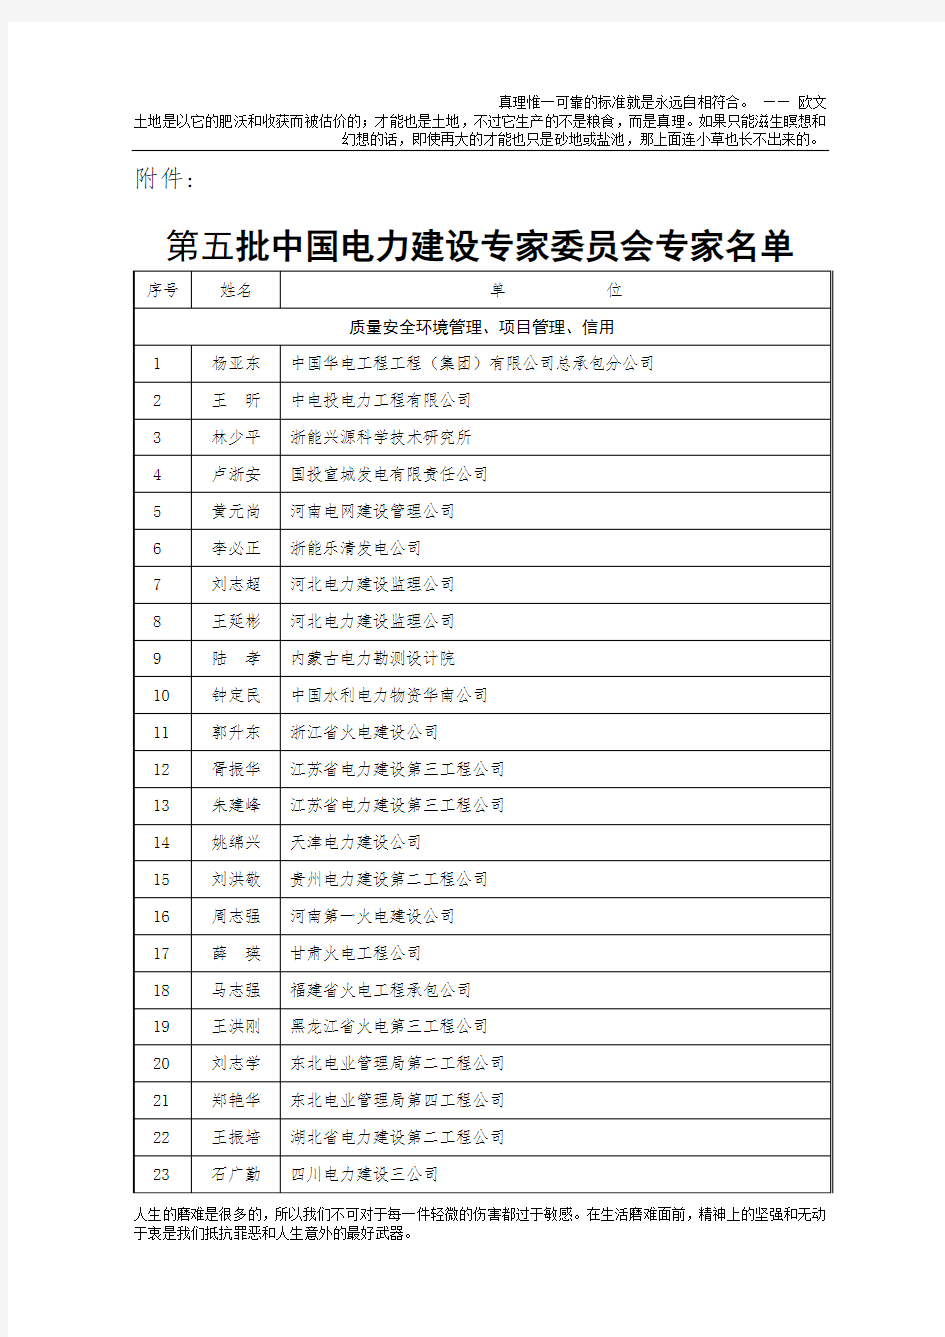 第五批中国电力建设专家委员会专家名单